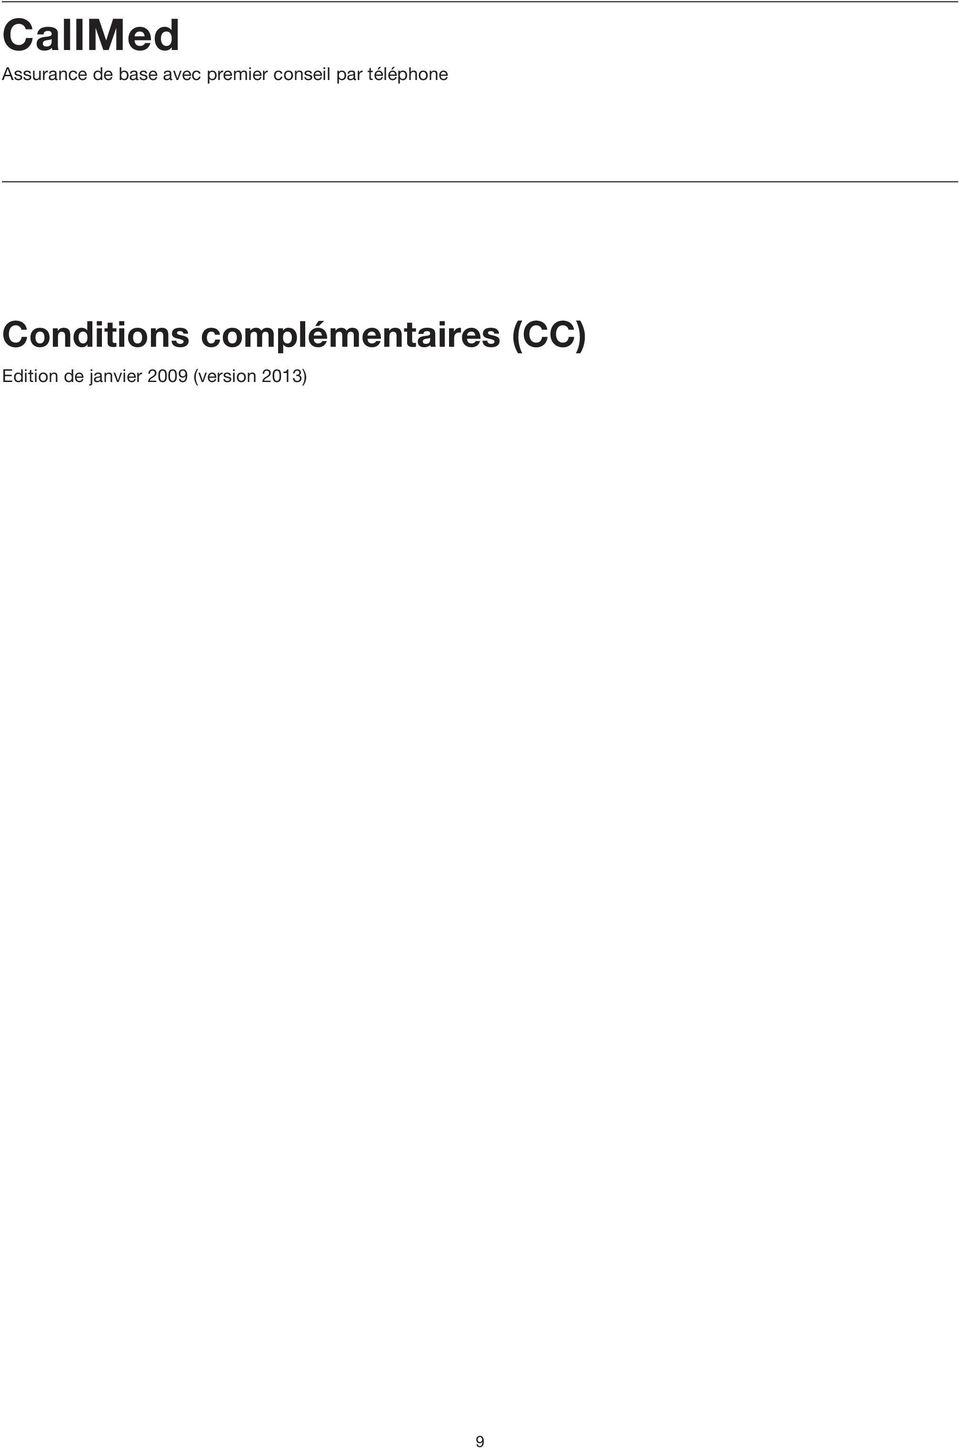 Conditions complémentaires (CC)